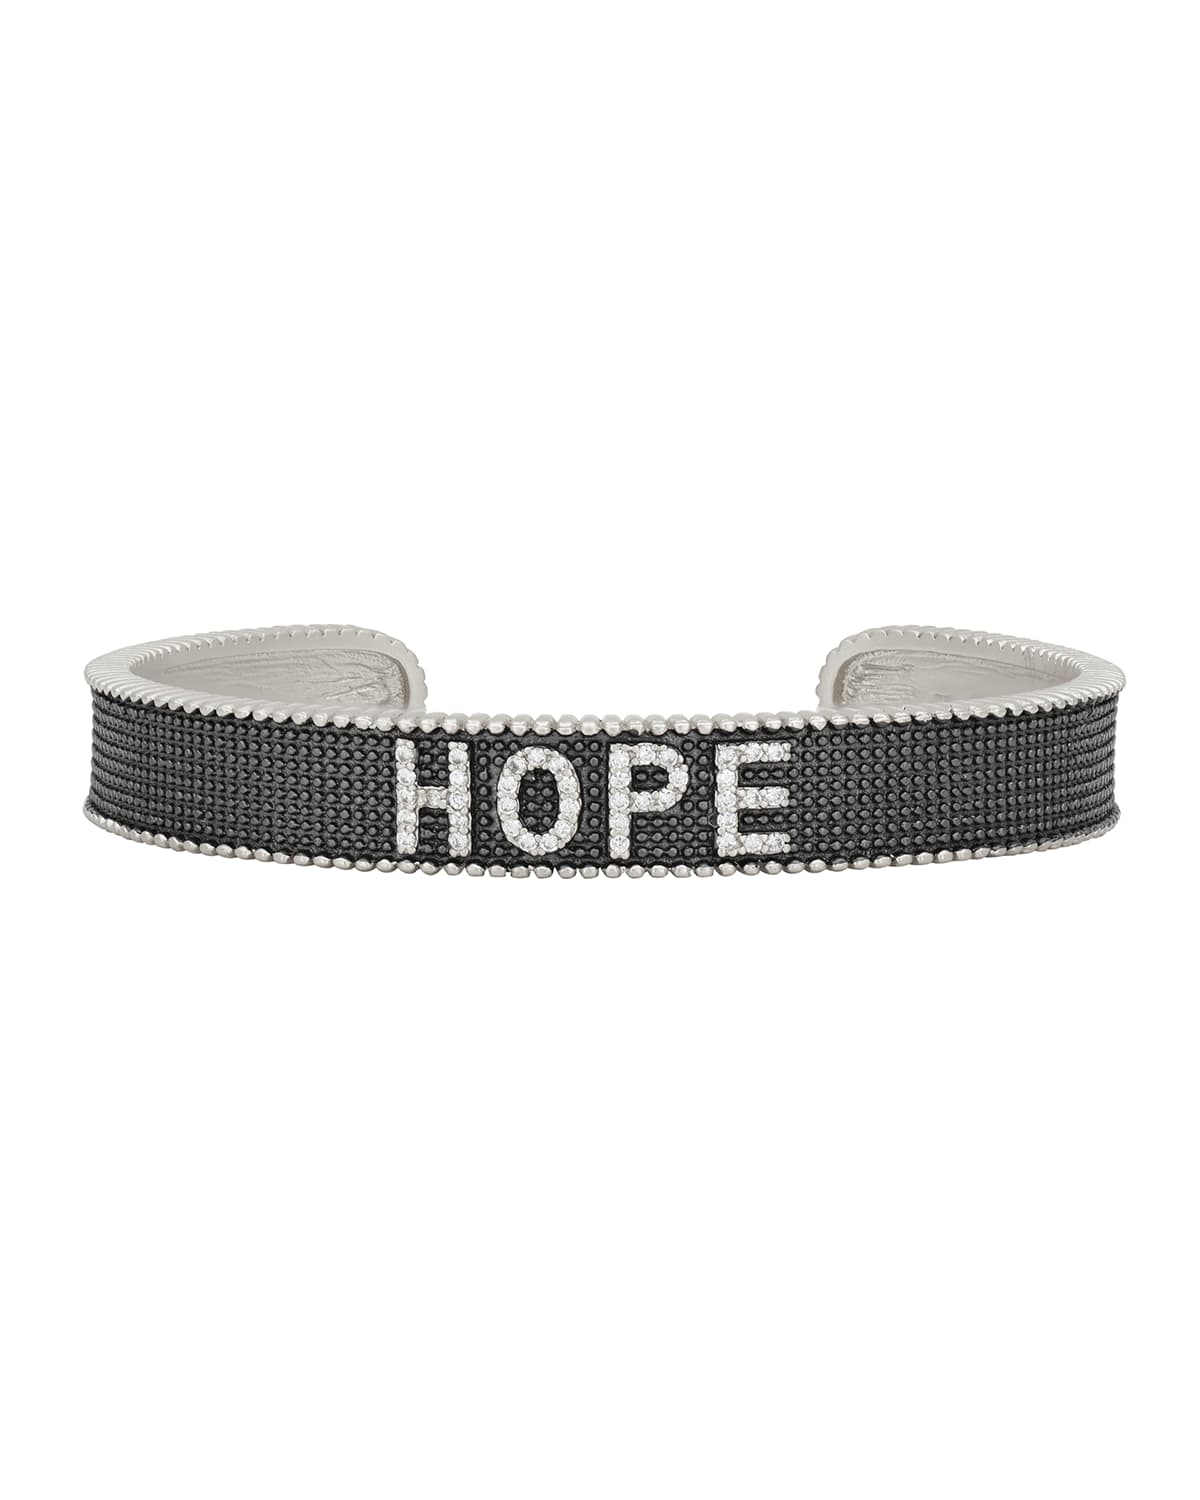 Freida Rothman Hope Cuff Bracelet